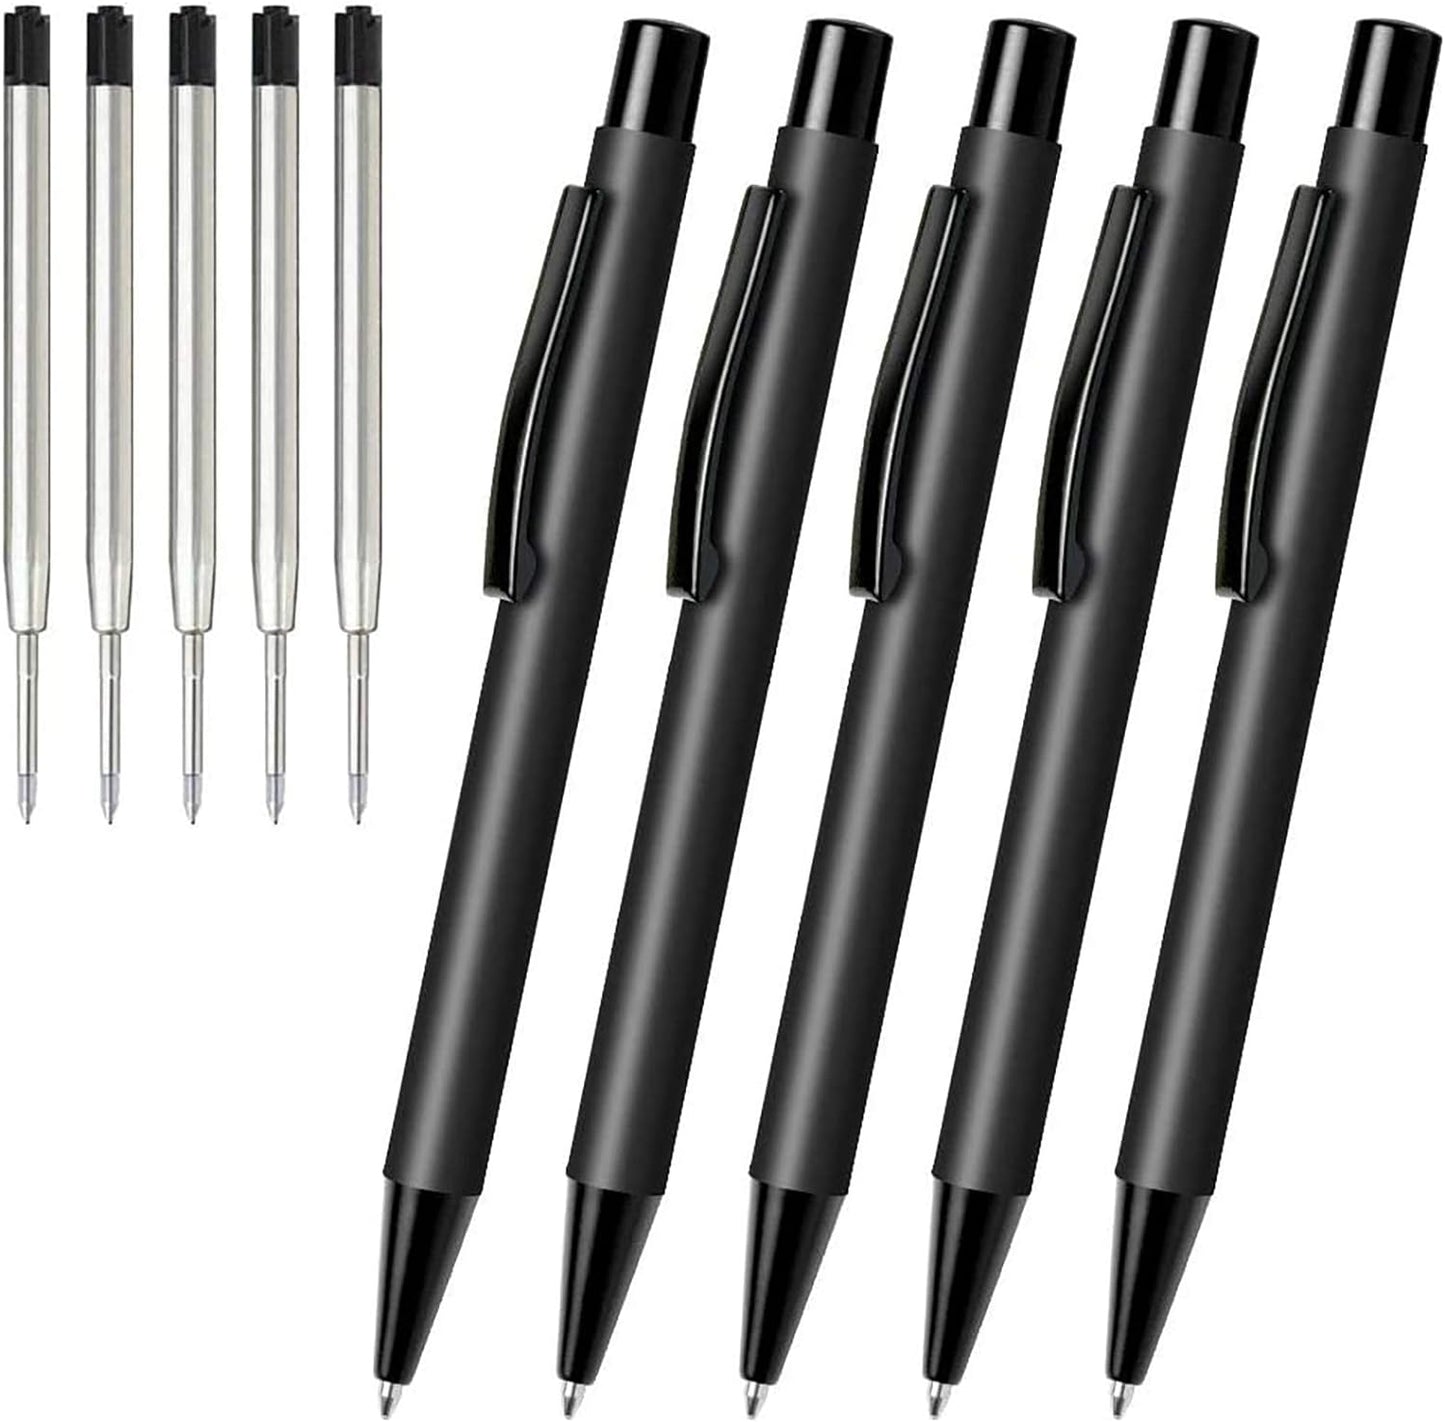 Cambond Ballpoint Pens for Gift Business Men